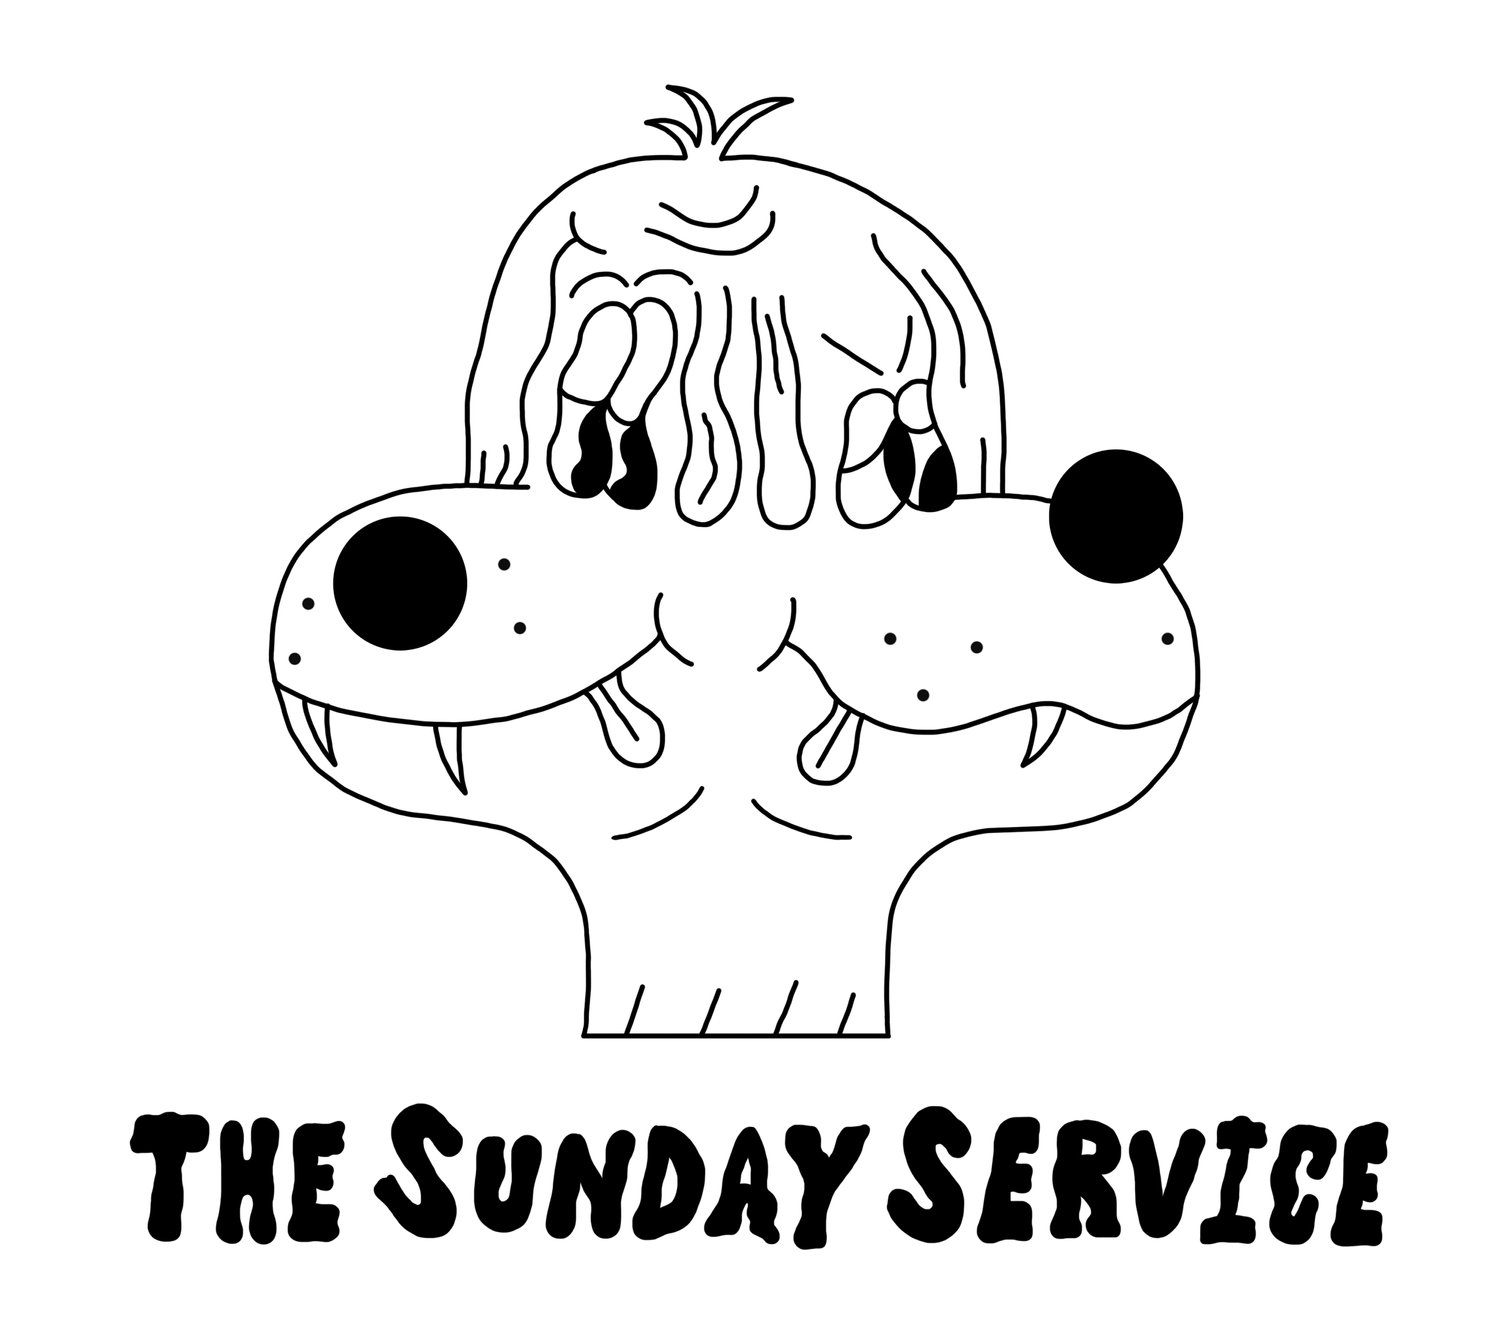 The Sunday Service Improv Co.